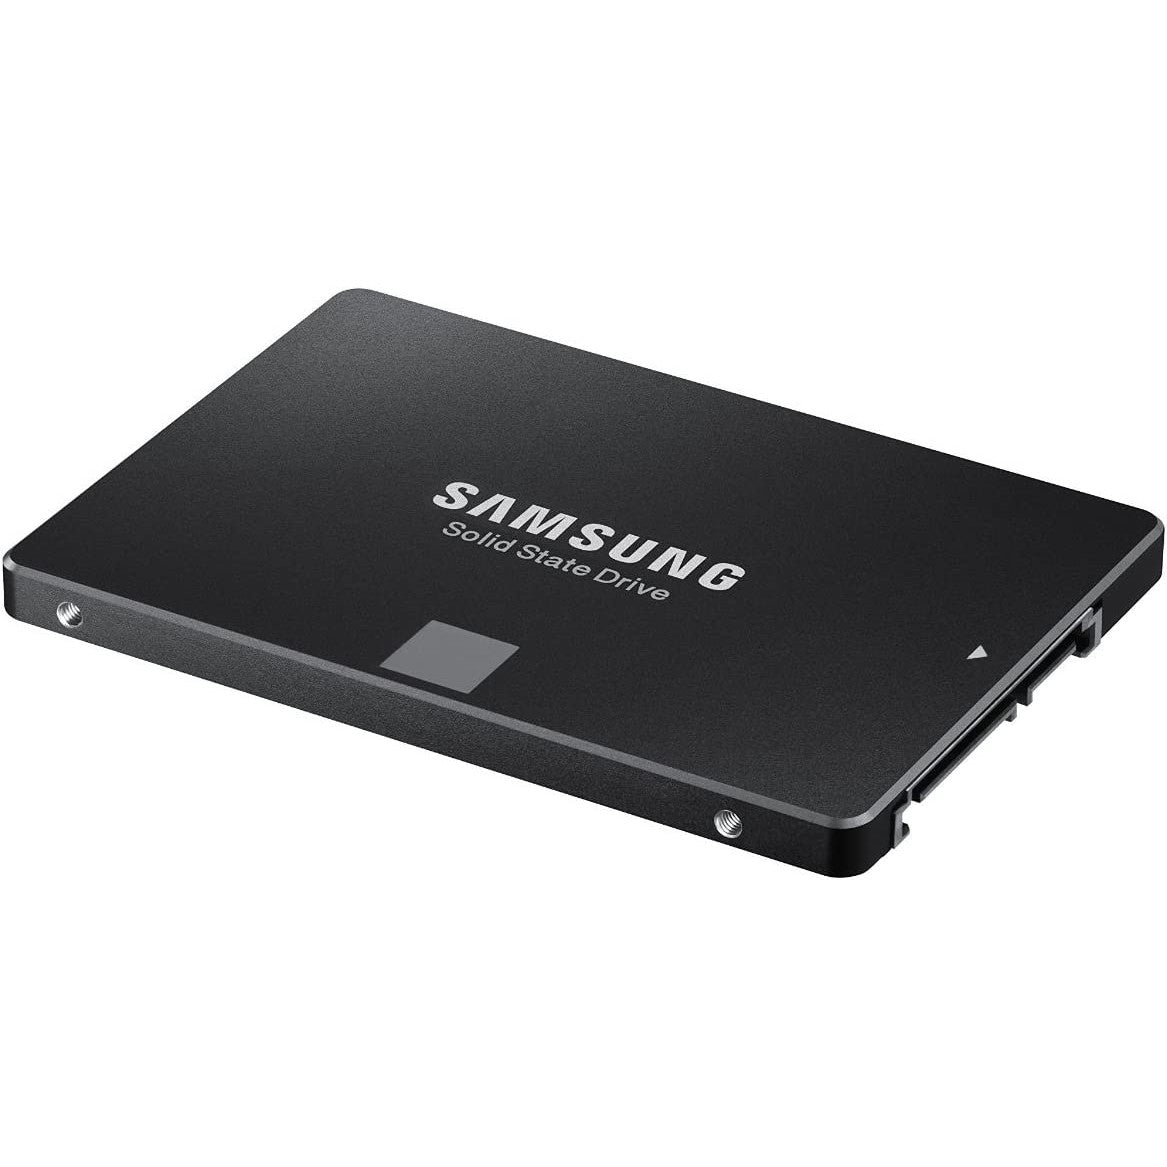 Samsung 850 EVO MZ-75E1T0 1TB Solid State Drive